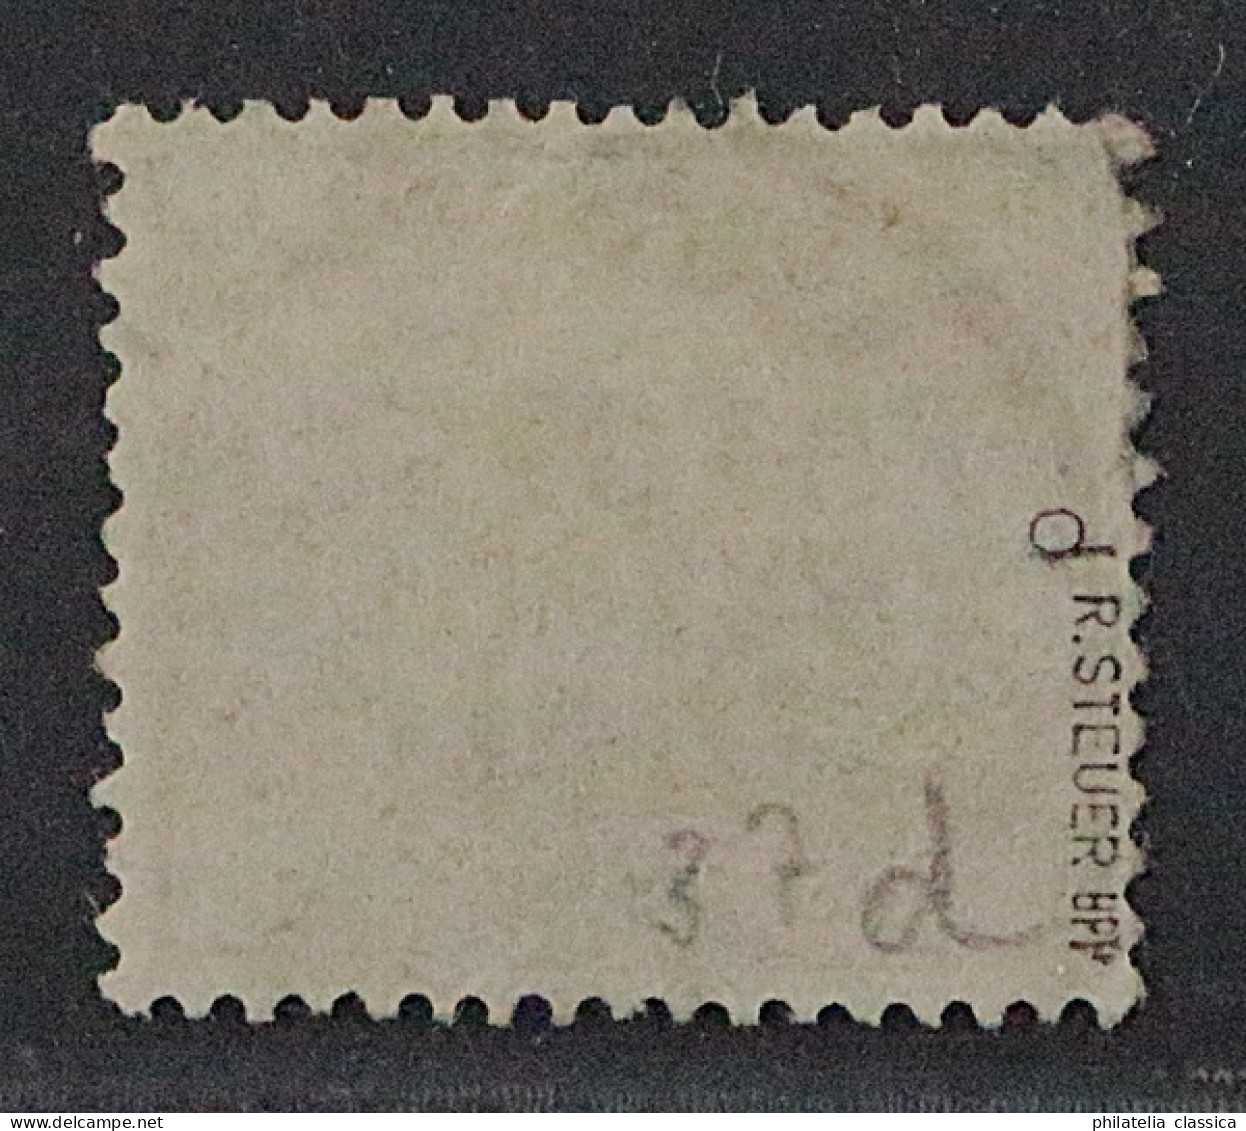 1887, Dt.Post CHINA Vorläufer V 37 D, 2 Mk. Lebhaftgraulila, Geprüft 700,-€ - Deutsche Post In China